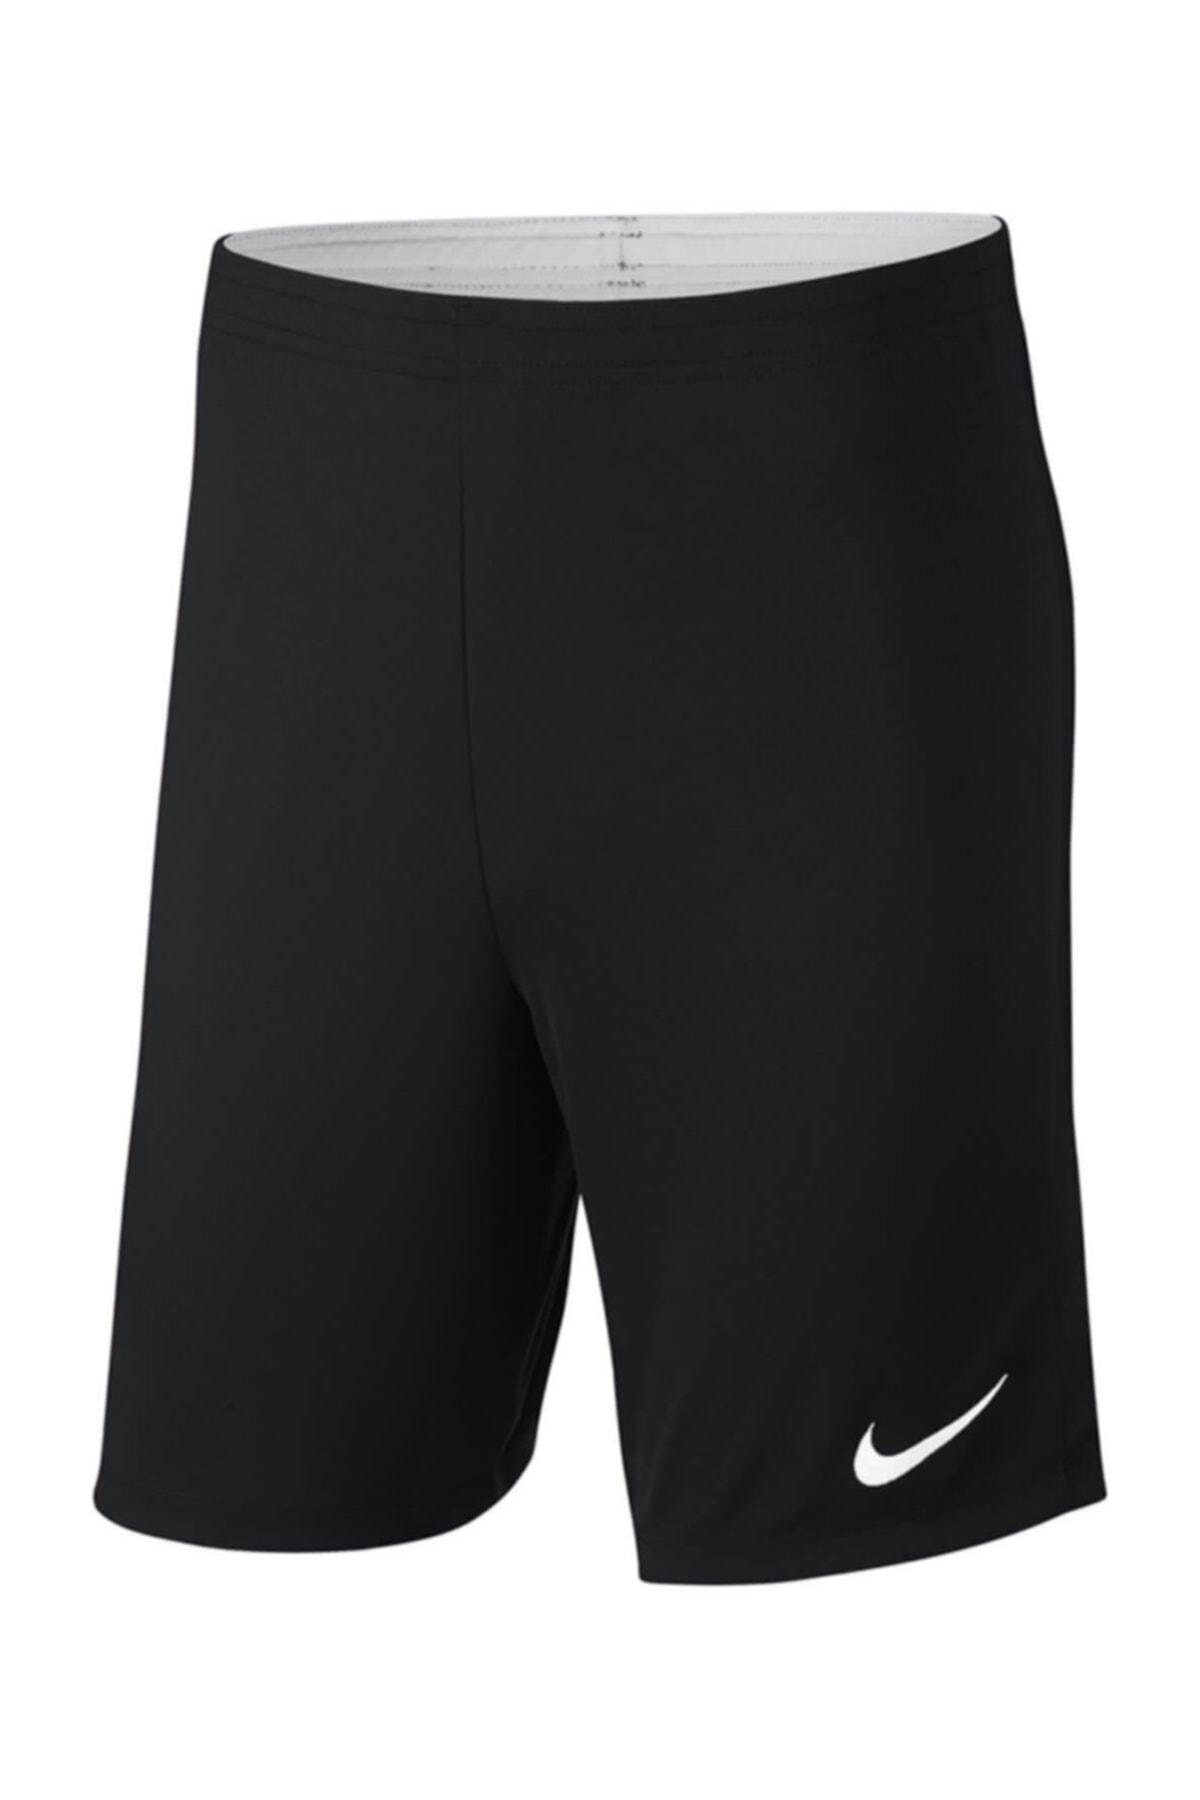 Nike Erkek Şort/bermuda - Dry Academy Erkek Futbol Şortu - 893691-010 ZO8627